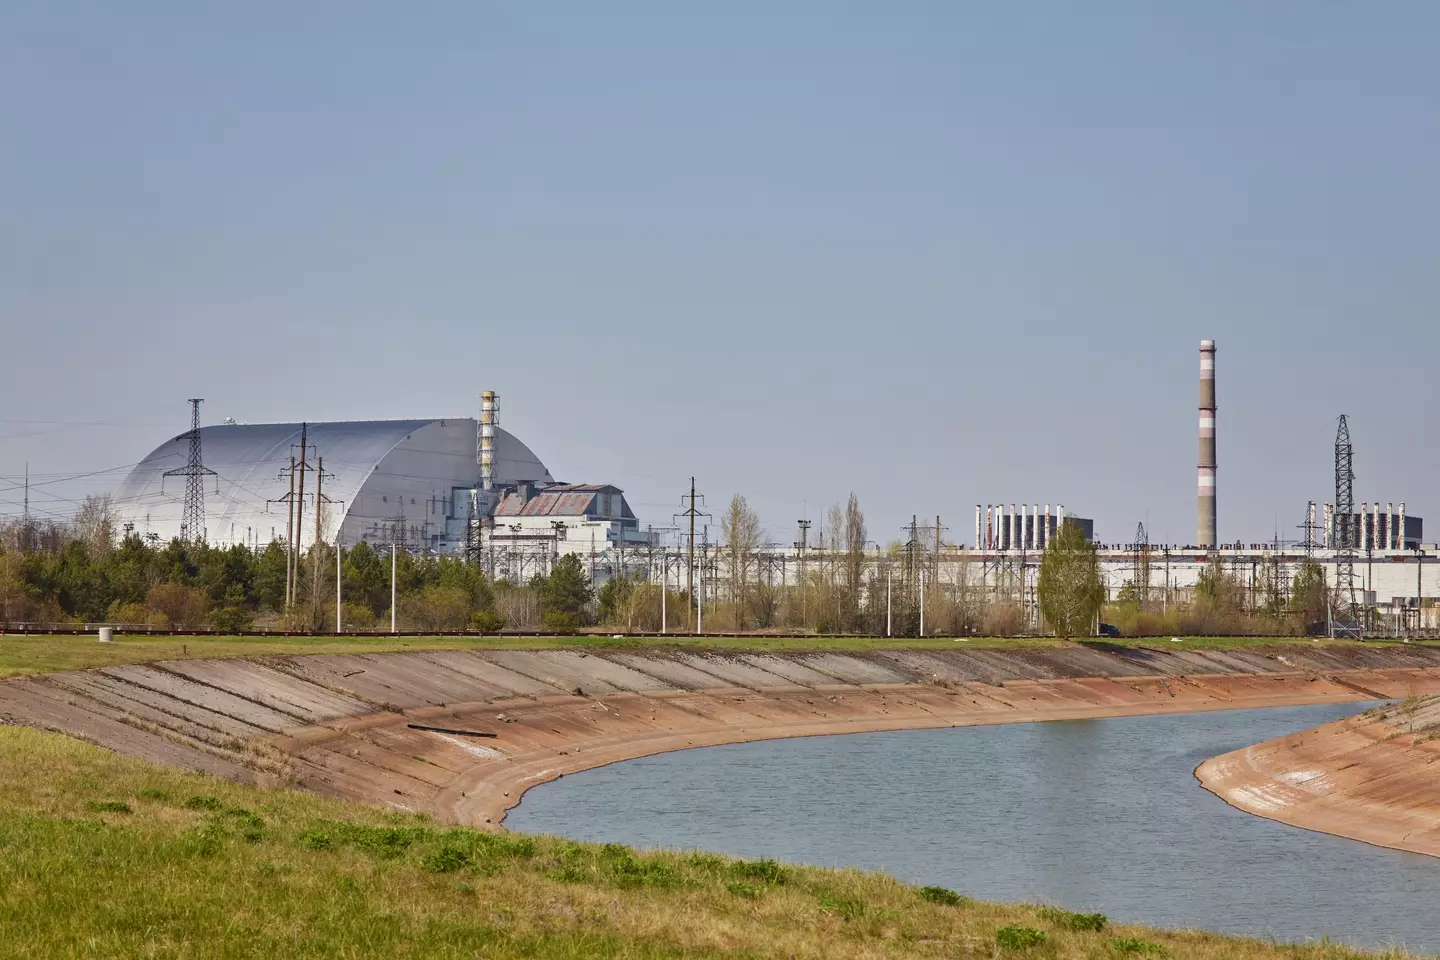 Chernobyl power plant, Ukraine.